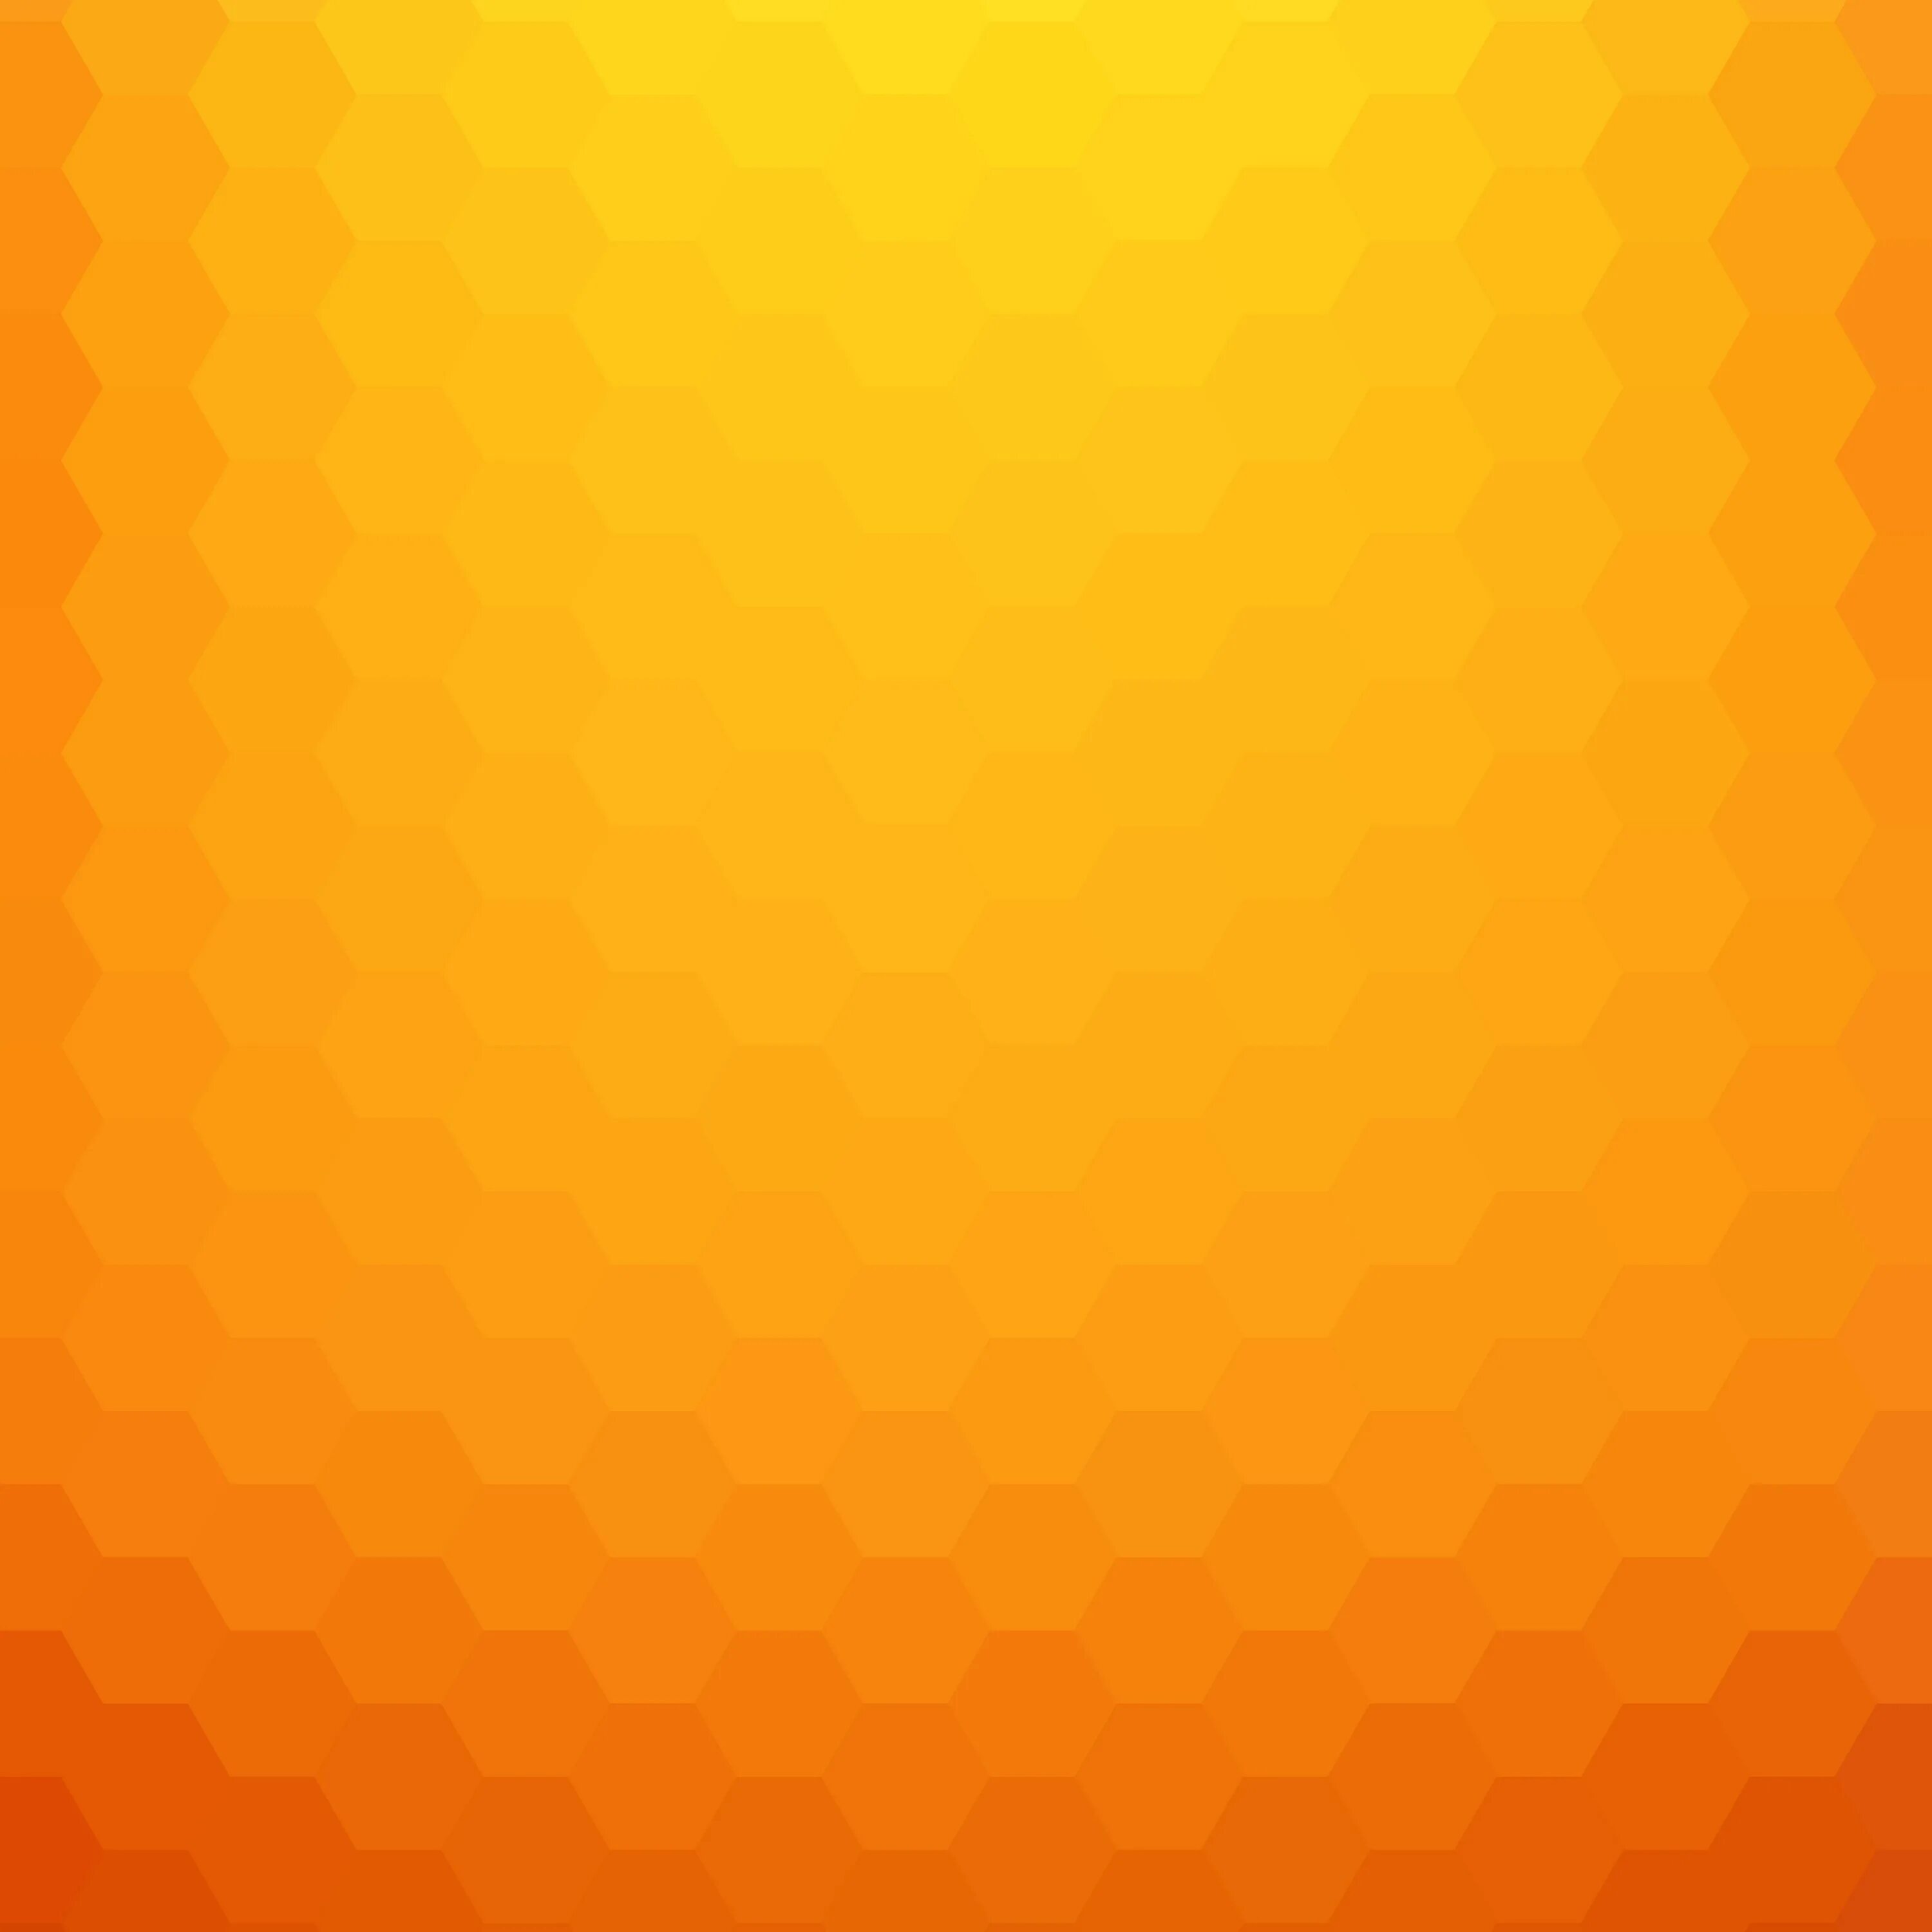 Оранжевый градиент. Желто оранжевый градиент. Оранжевый фон. Красивый оранжевый градиент. Коричневая желтая оранжевая серая